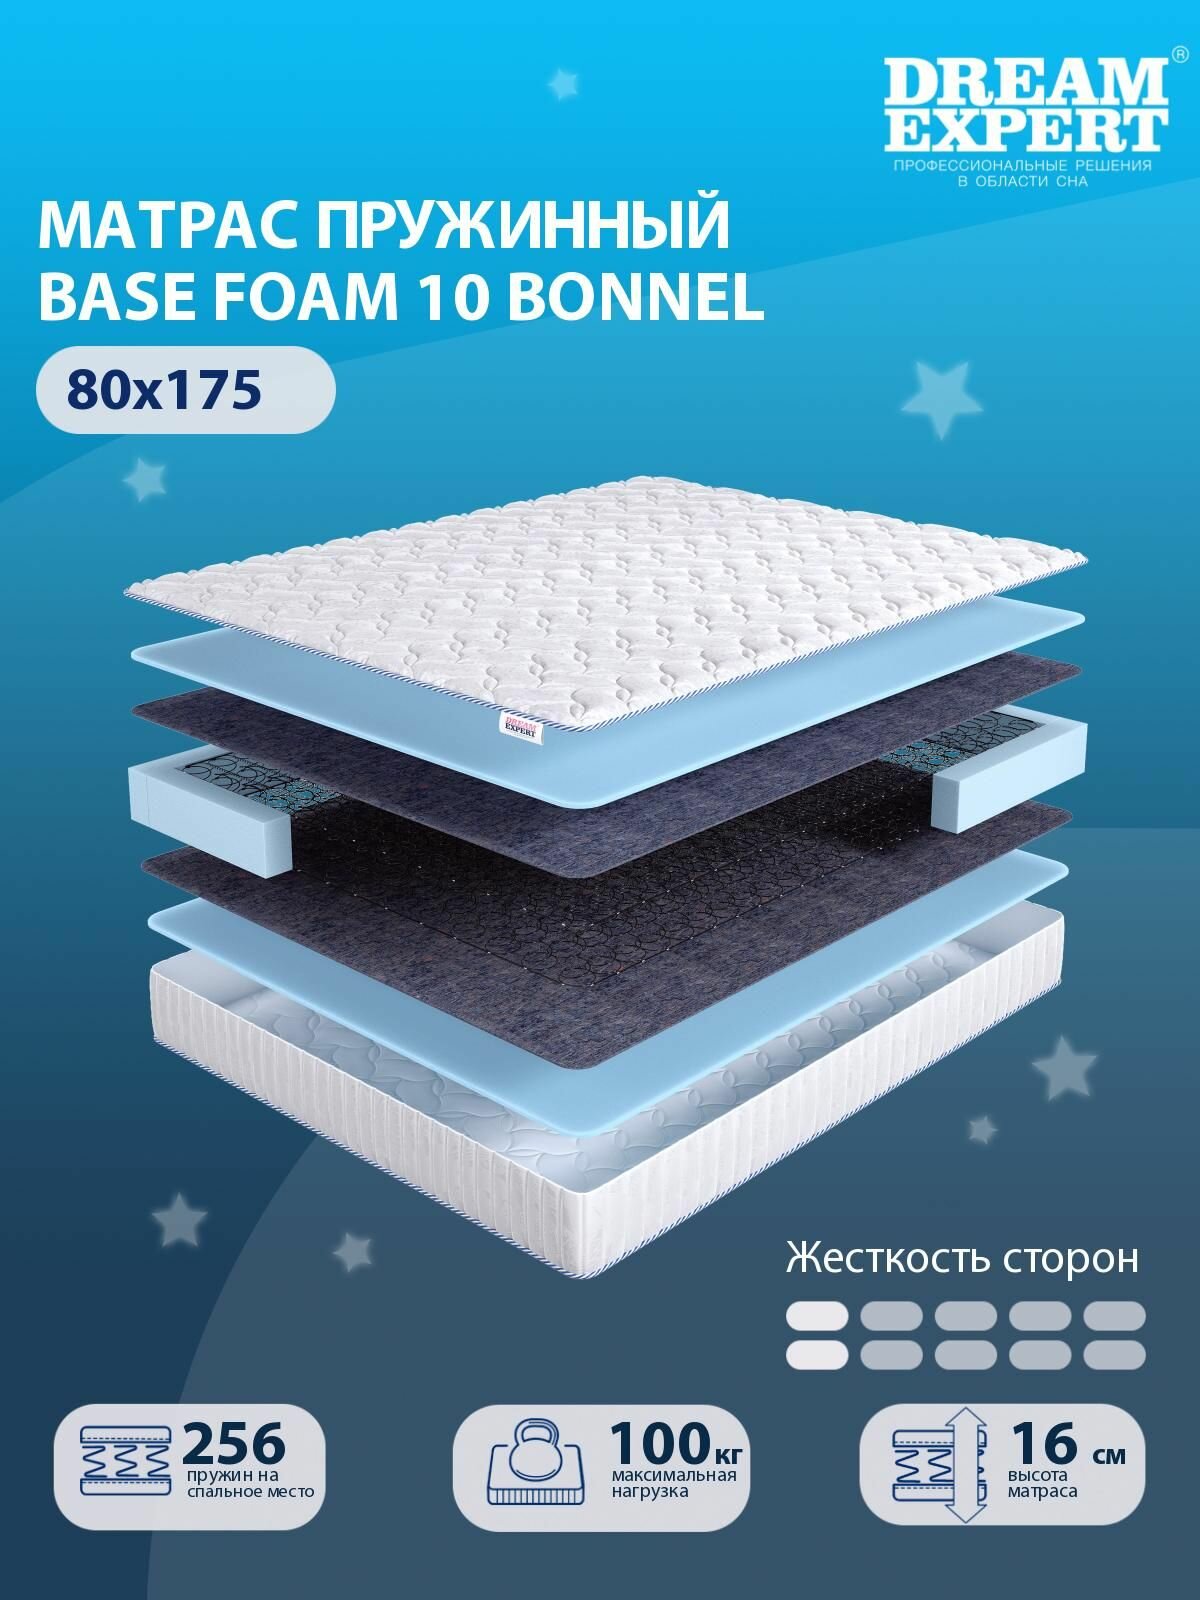 Матрас DreamExpert Base Foam 10 Bonnel низкой жесткости, односпальный, зависимый пружинный блок, на кровать 80x175